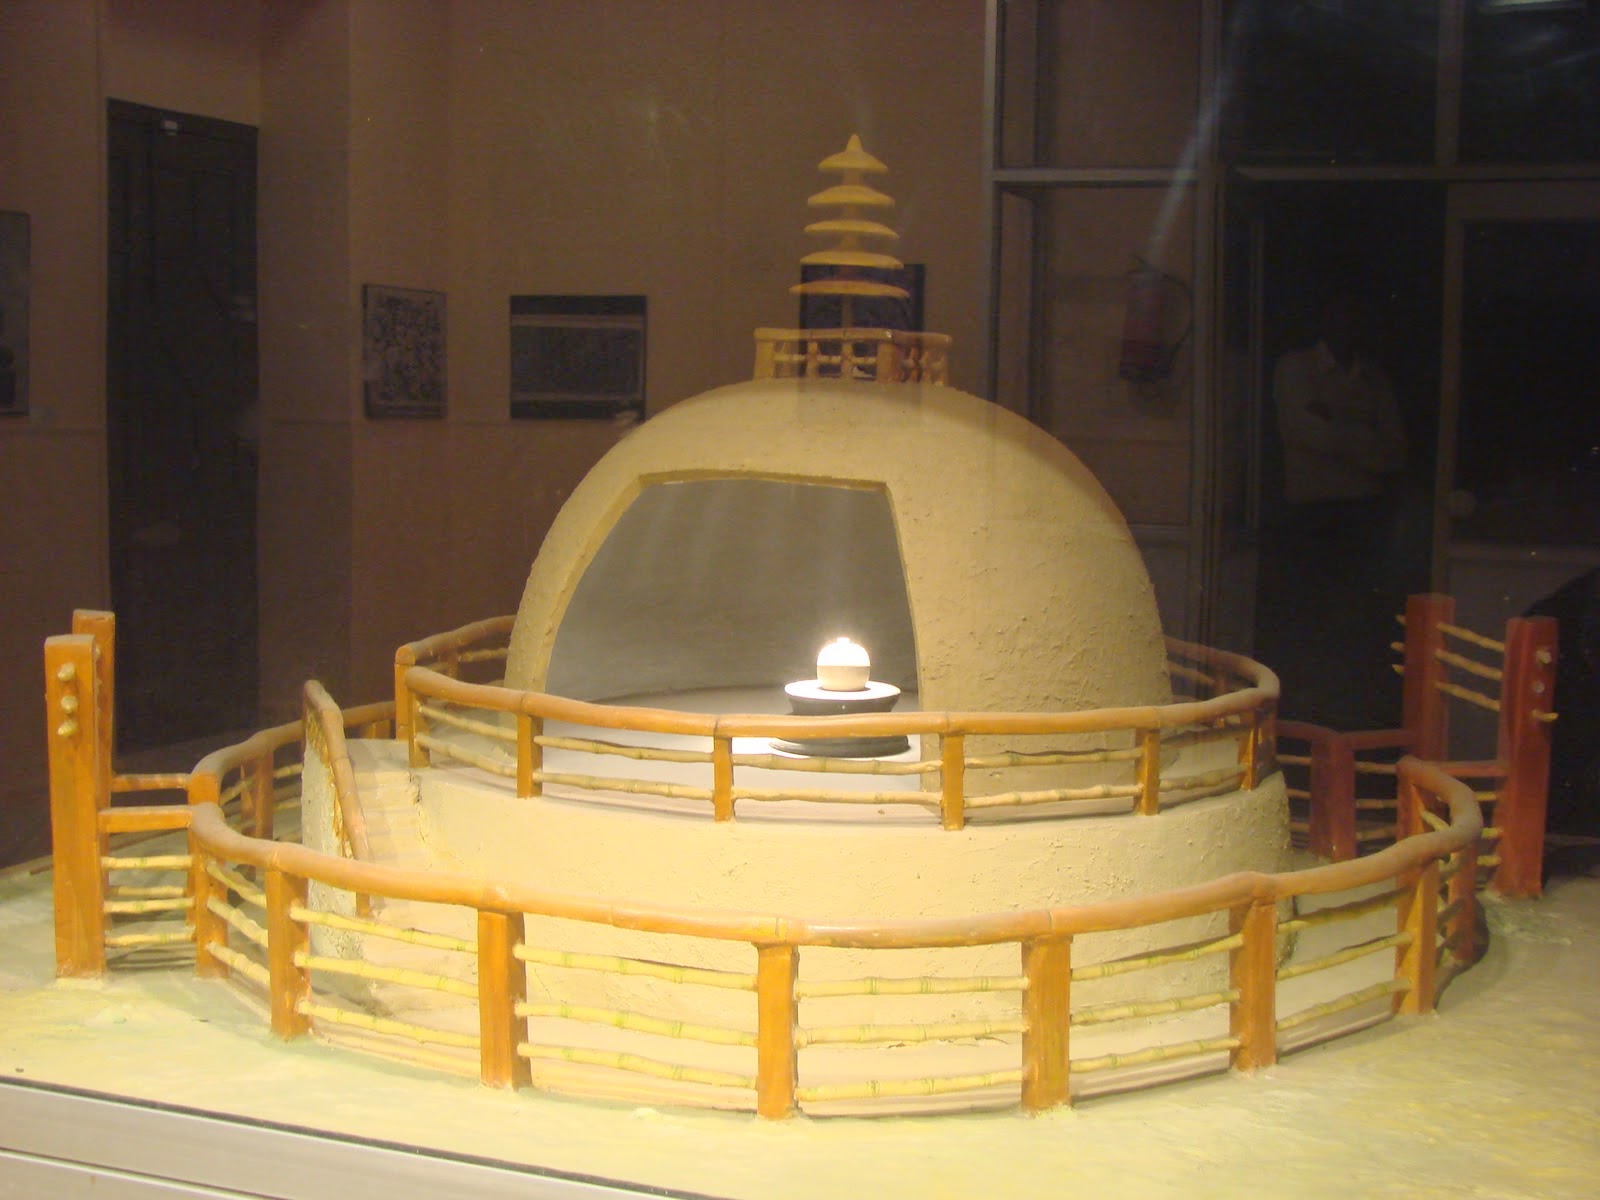 Xá-lợi Đức Phật tại Viện bảo tàng Patna, Ấn Độ